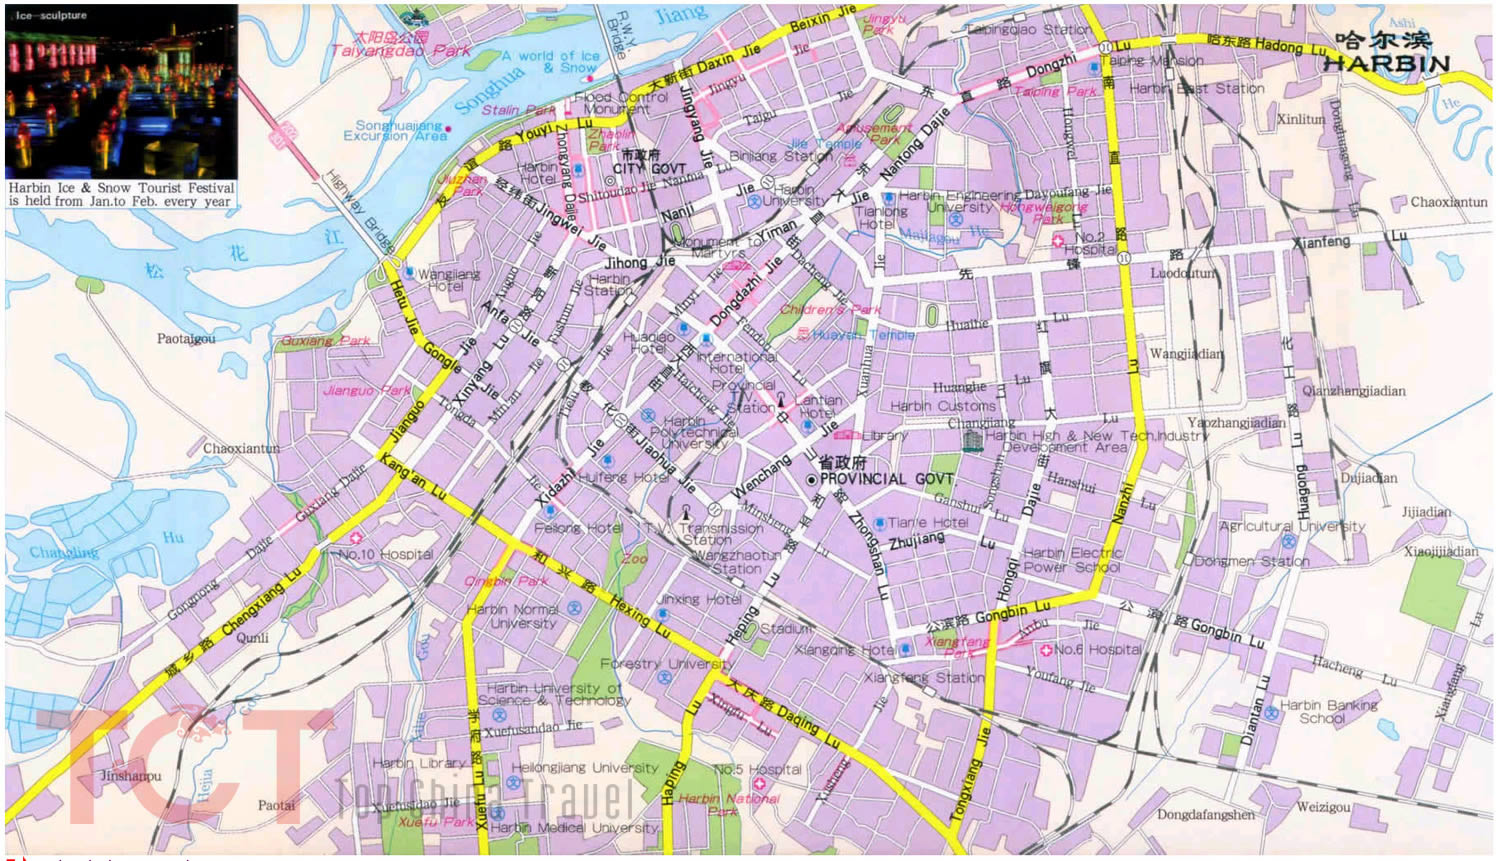 city center map of harbin